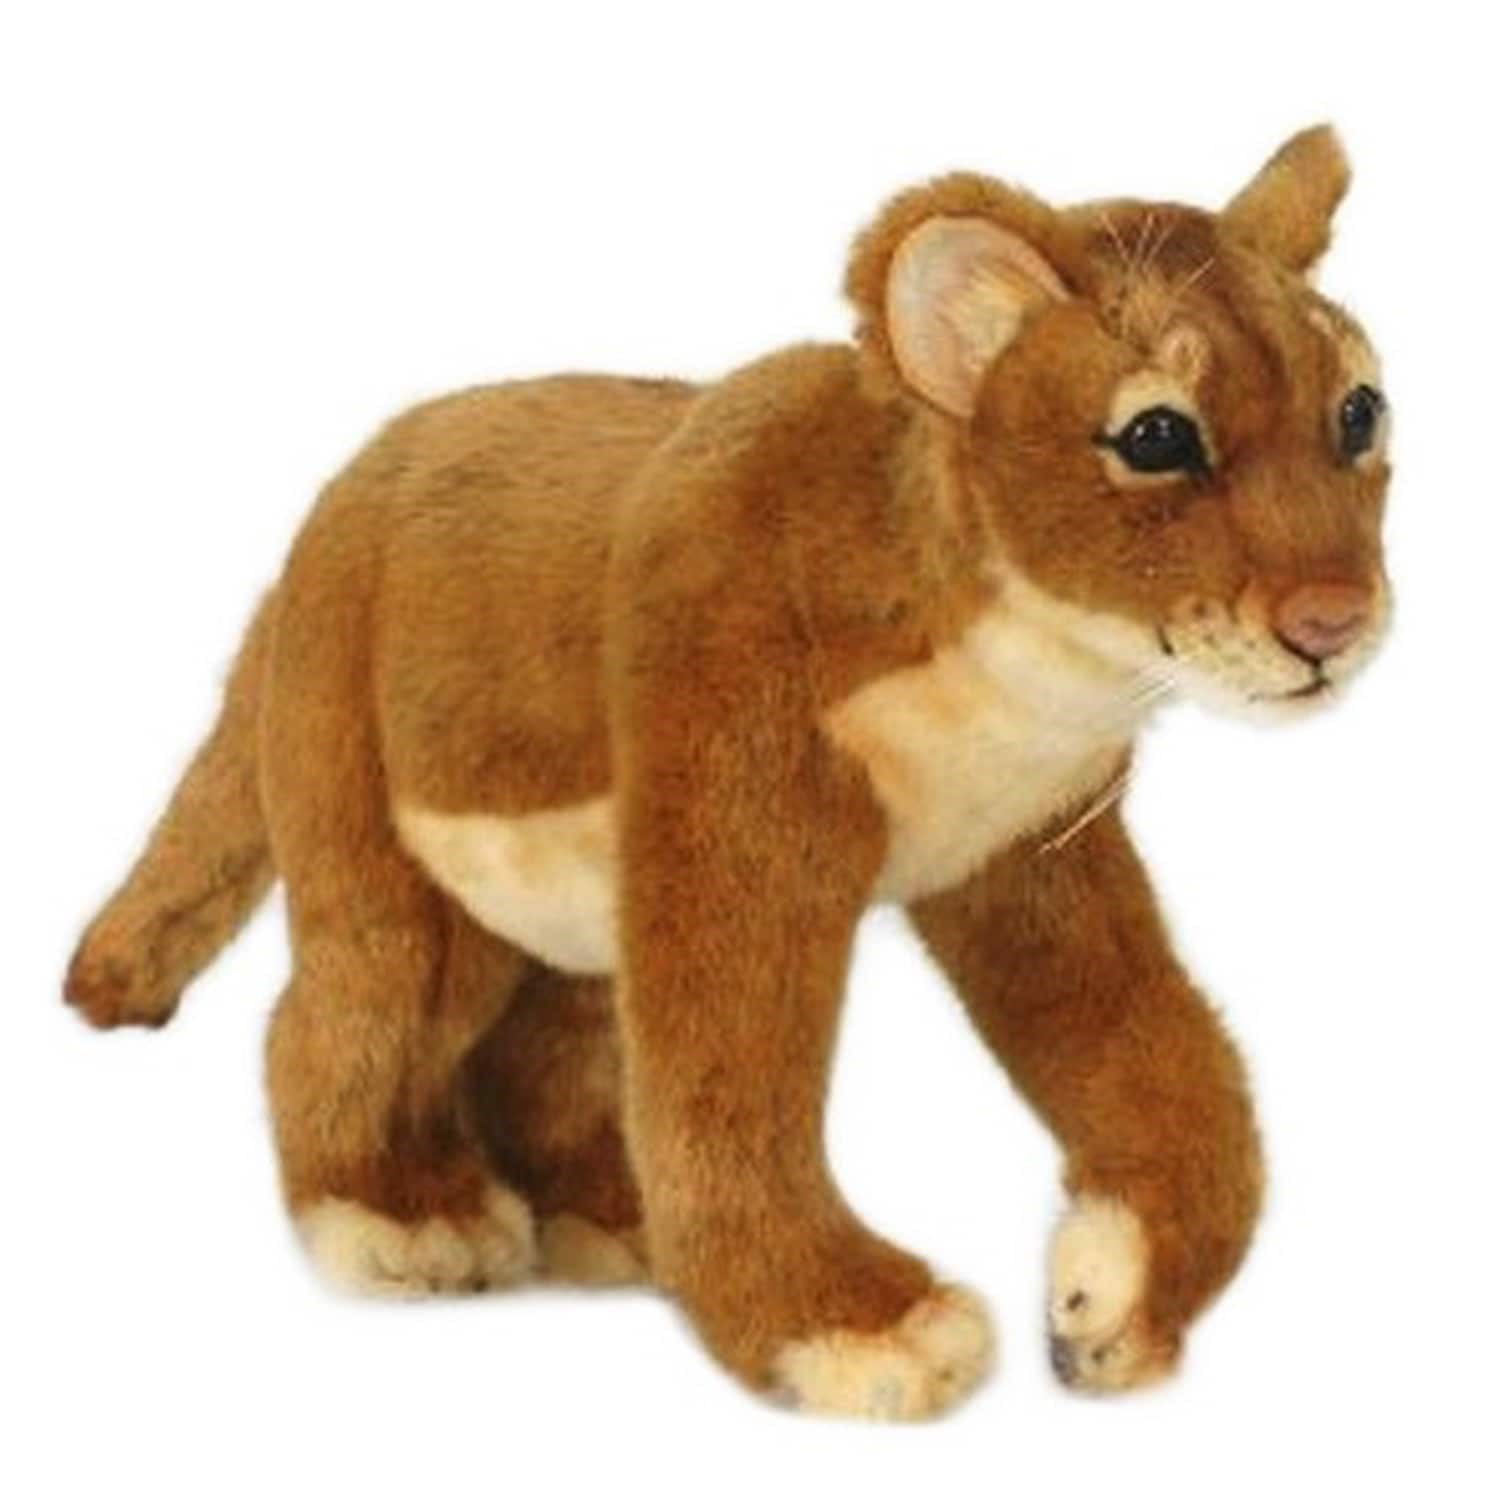 Kösen exquisite plush collectors soft toy 6310 Lion Cub by Kosen 